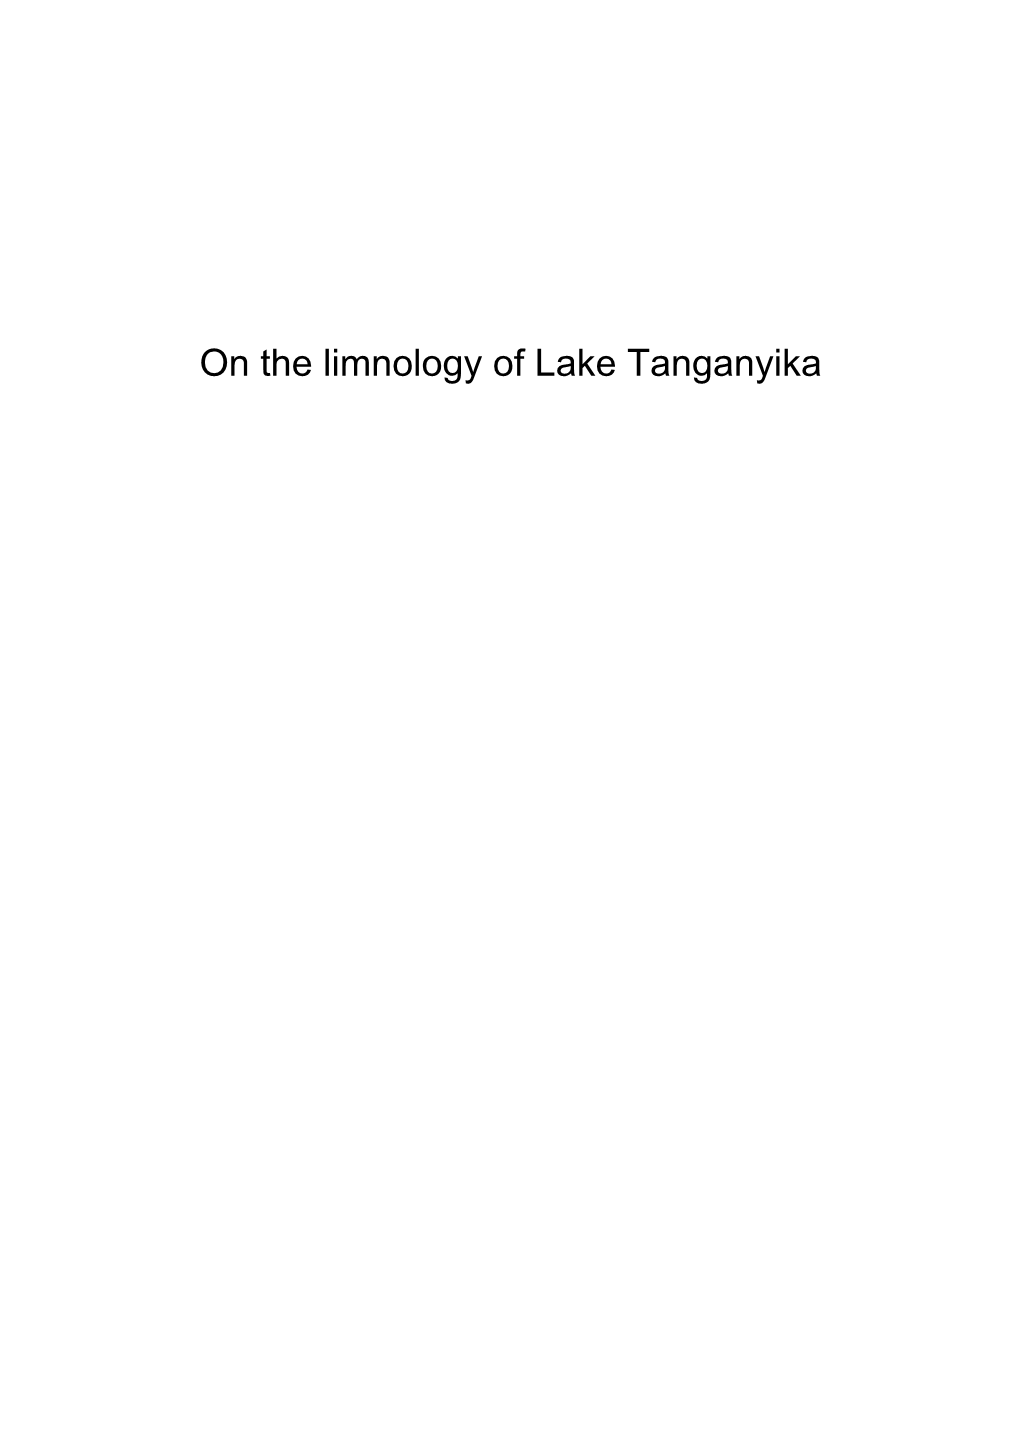 On the Limnology of Lake Tanganyika